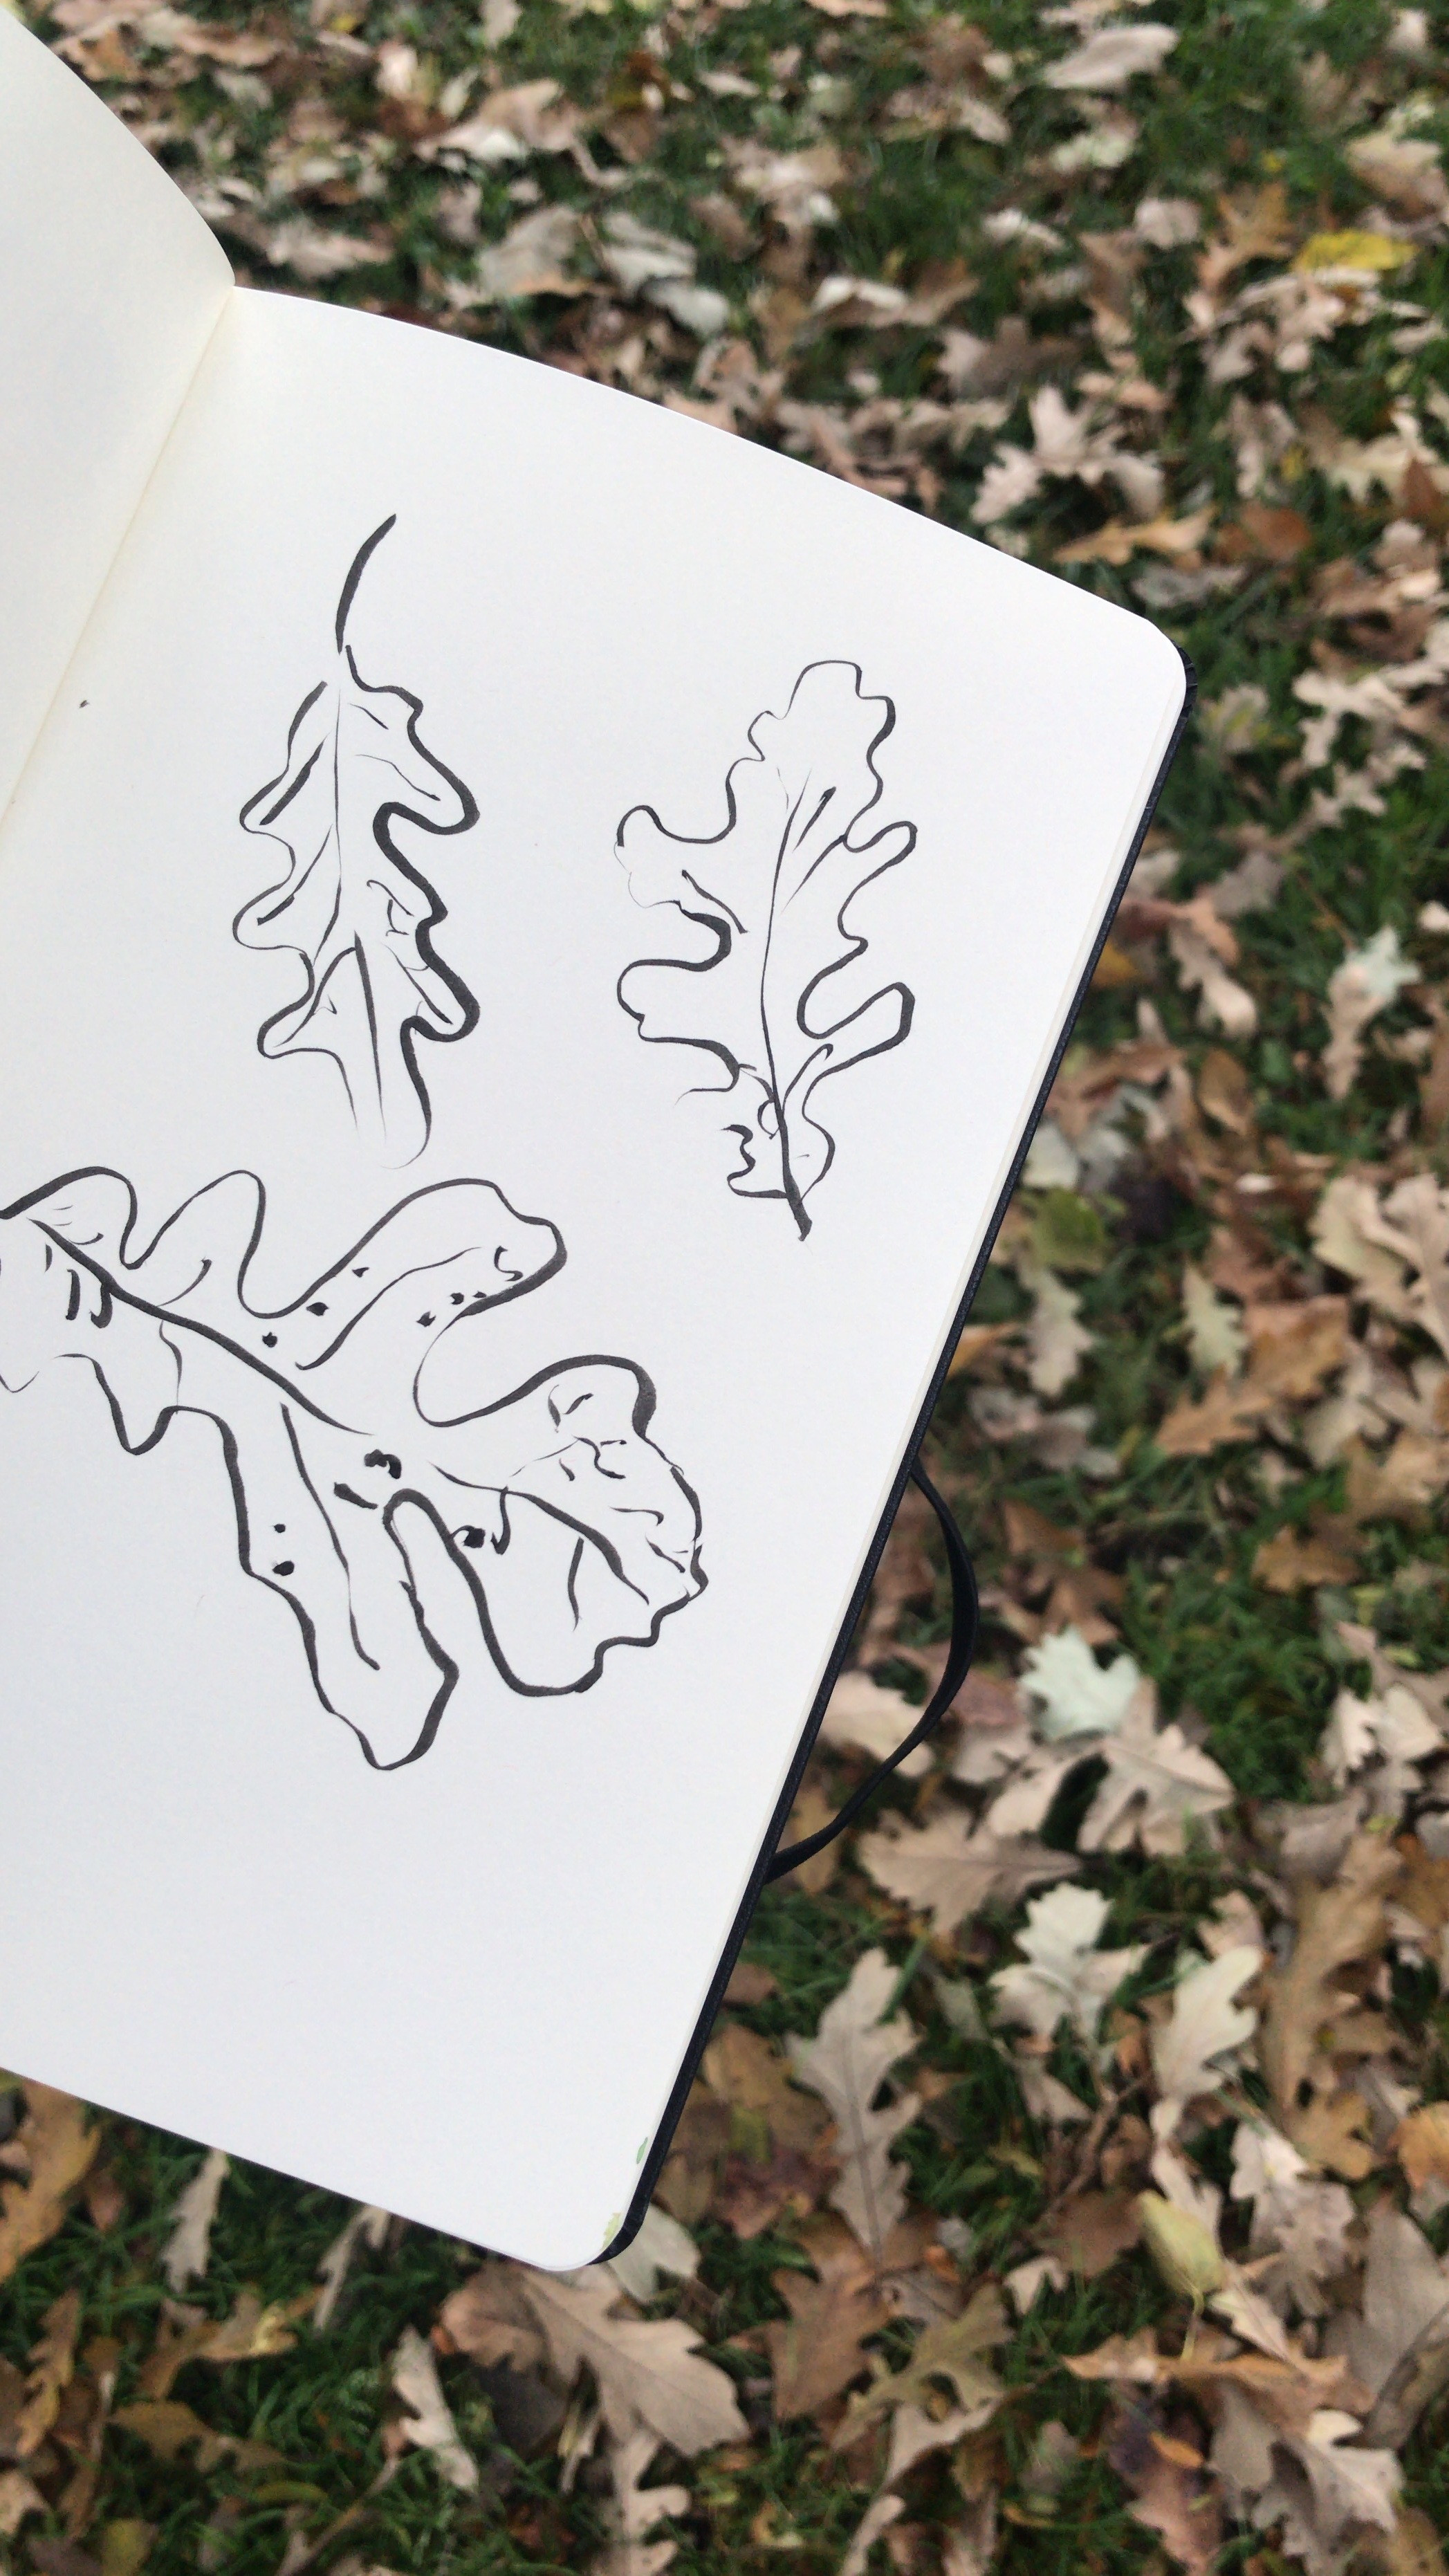 kate lewis art.fall leaves drawing.JPG